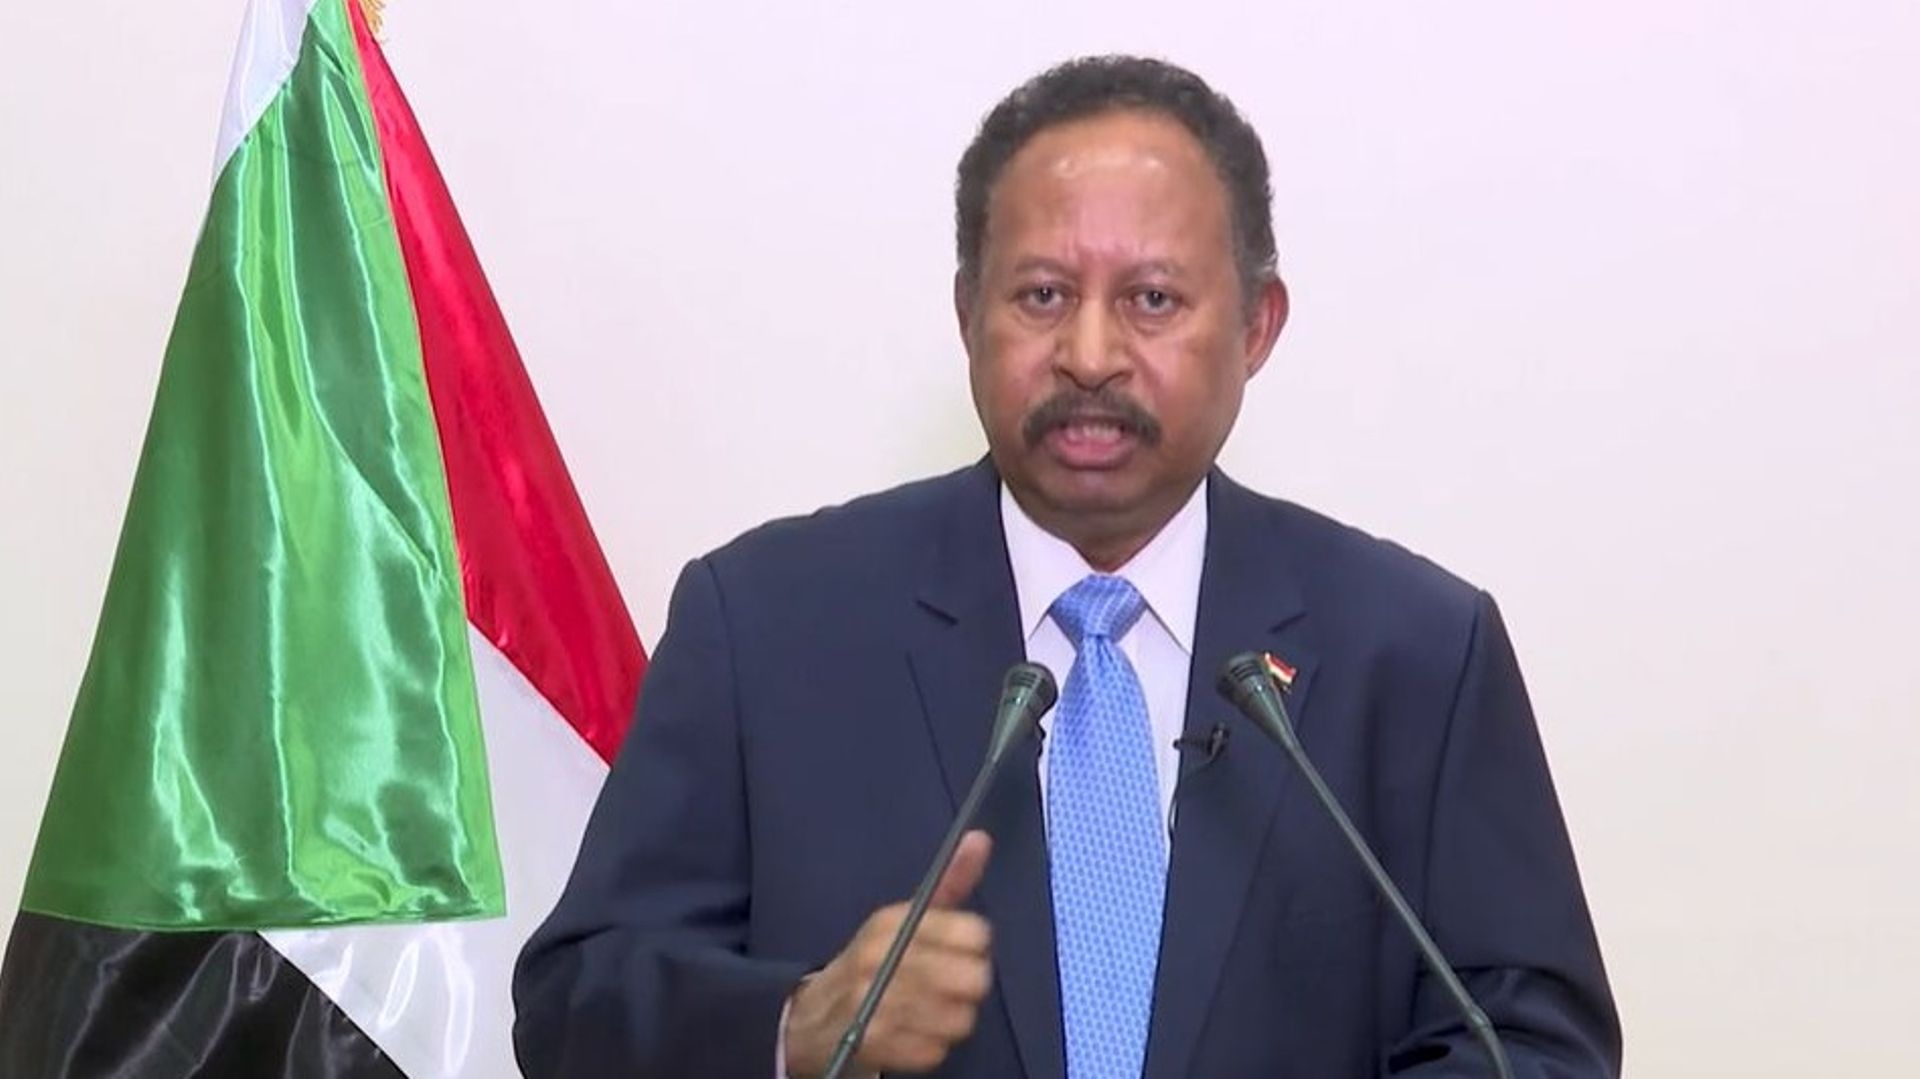 Le Premier ministre soudanais Abdallah Hamdok a remis sa démission au cours d’une allocution télévisée